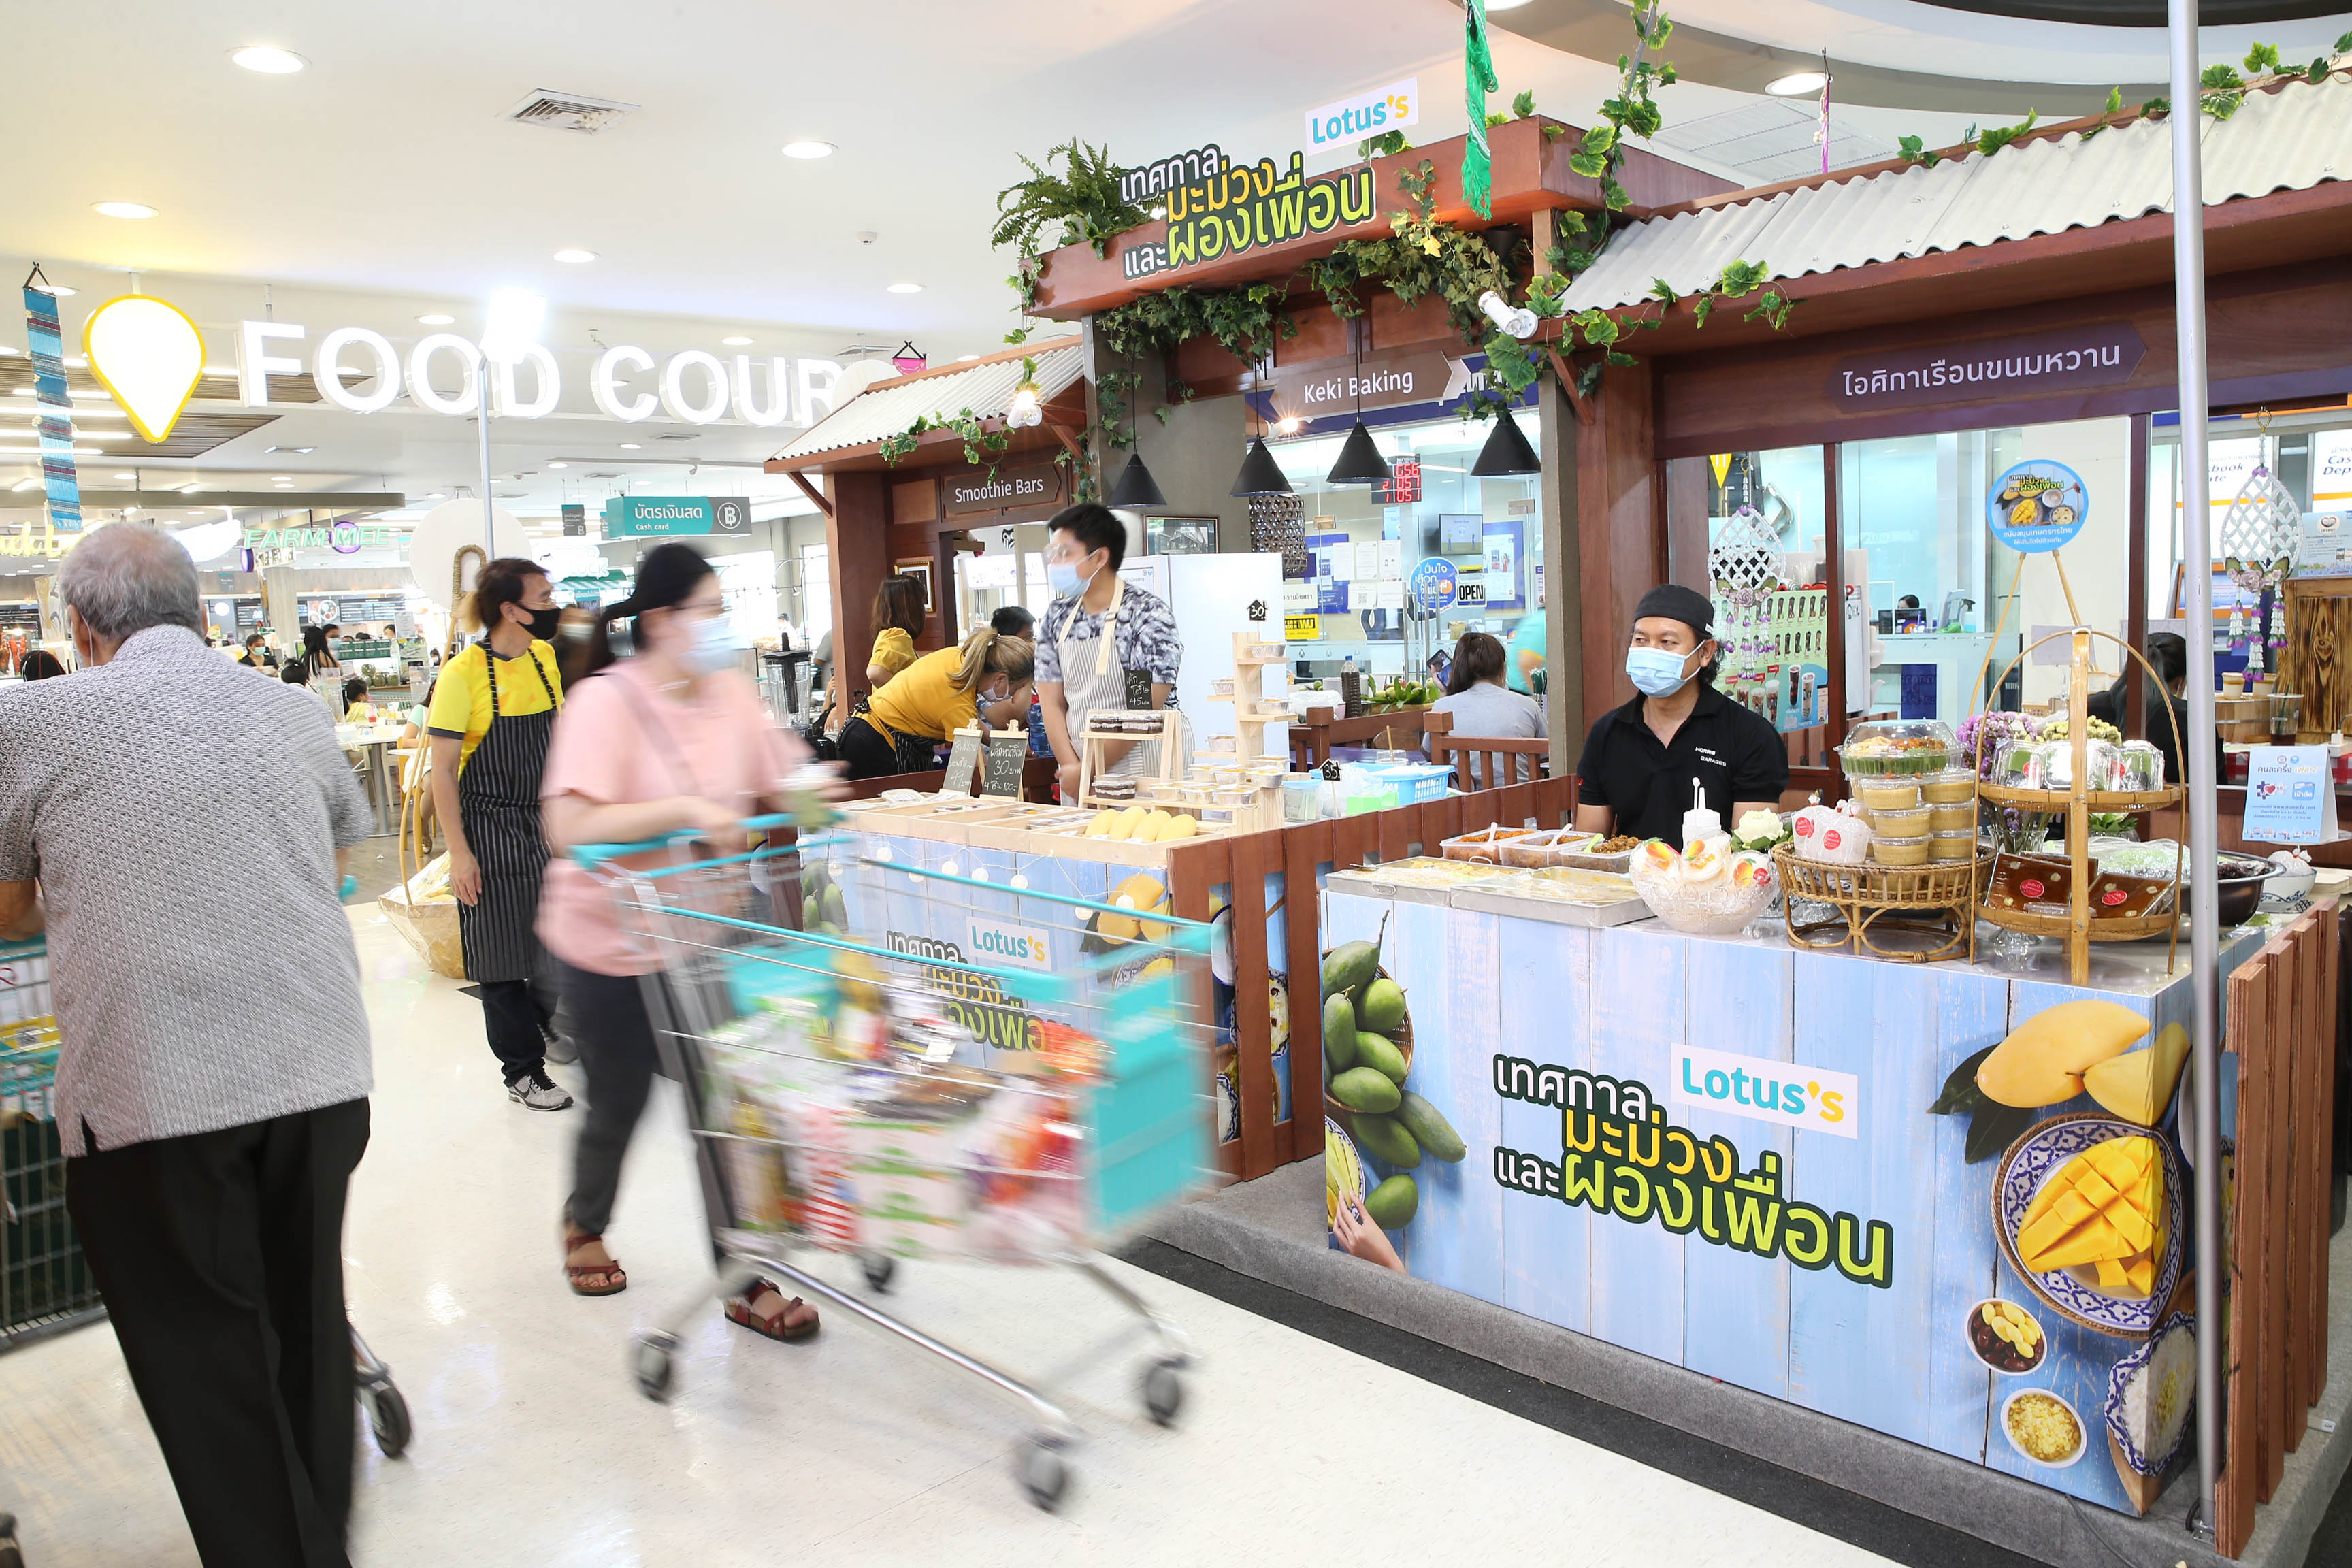 โลตัส สนับสนุนเกษตรกรสวนมะม่วง รับซื้อมะม่วงกว่า 3,200 ตัน จับมือกรมการค้าภายใน เปิดตัว “เทศกาลมะม่วงและผองเพื่อน” ชวนคนไทยบริโภคผลไม้ไทย